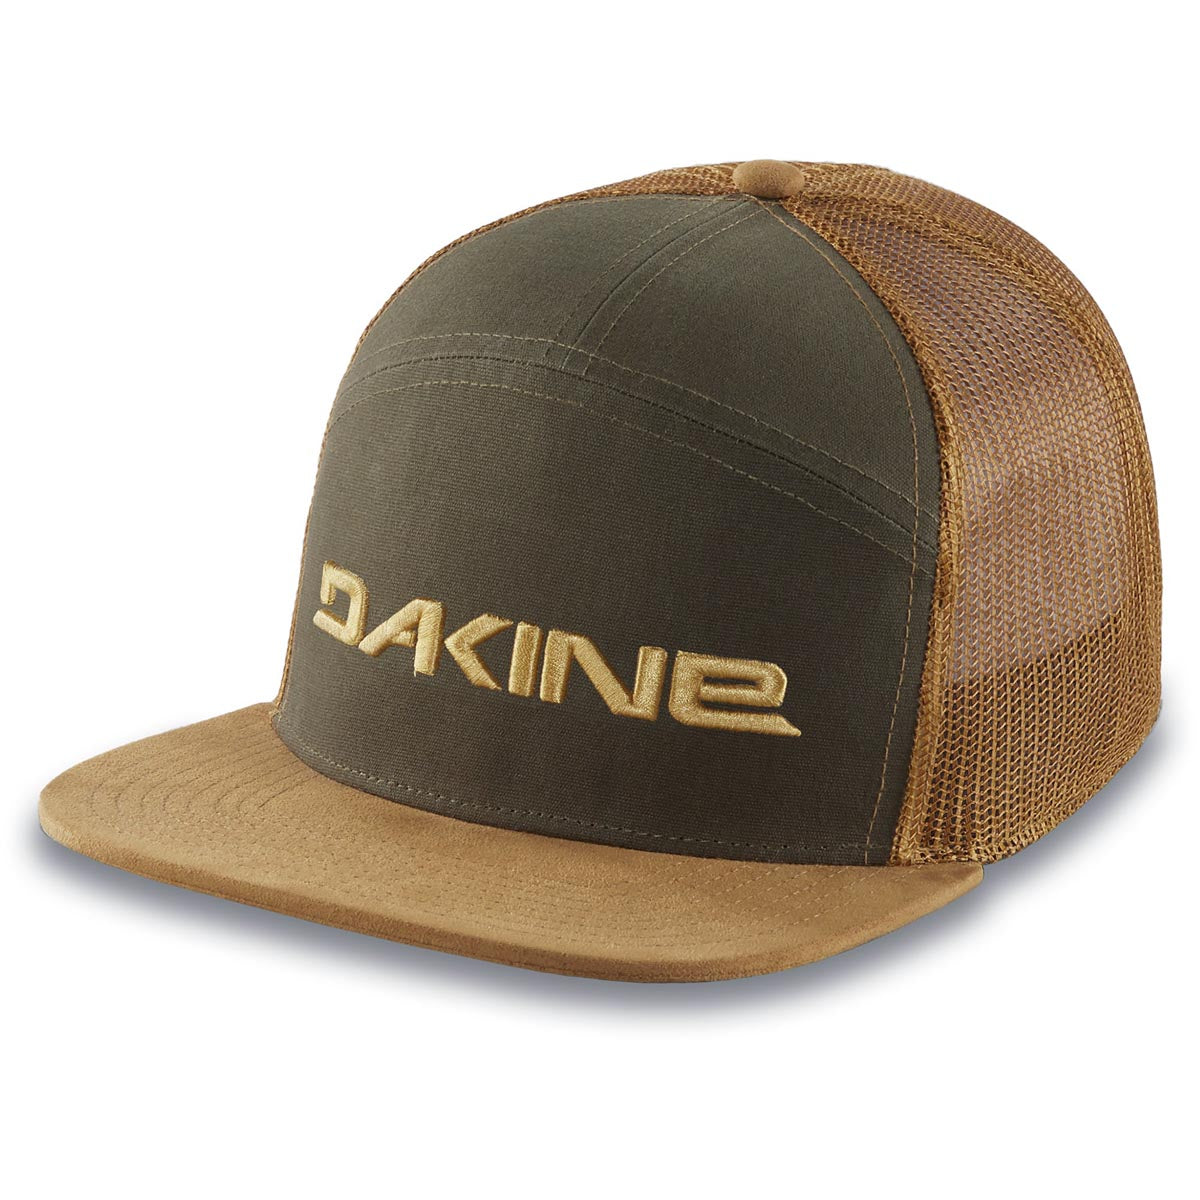 Dakine Arch Hat - Dark Olive image 1